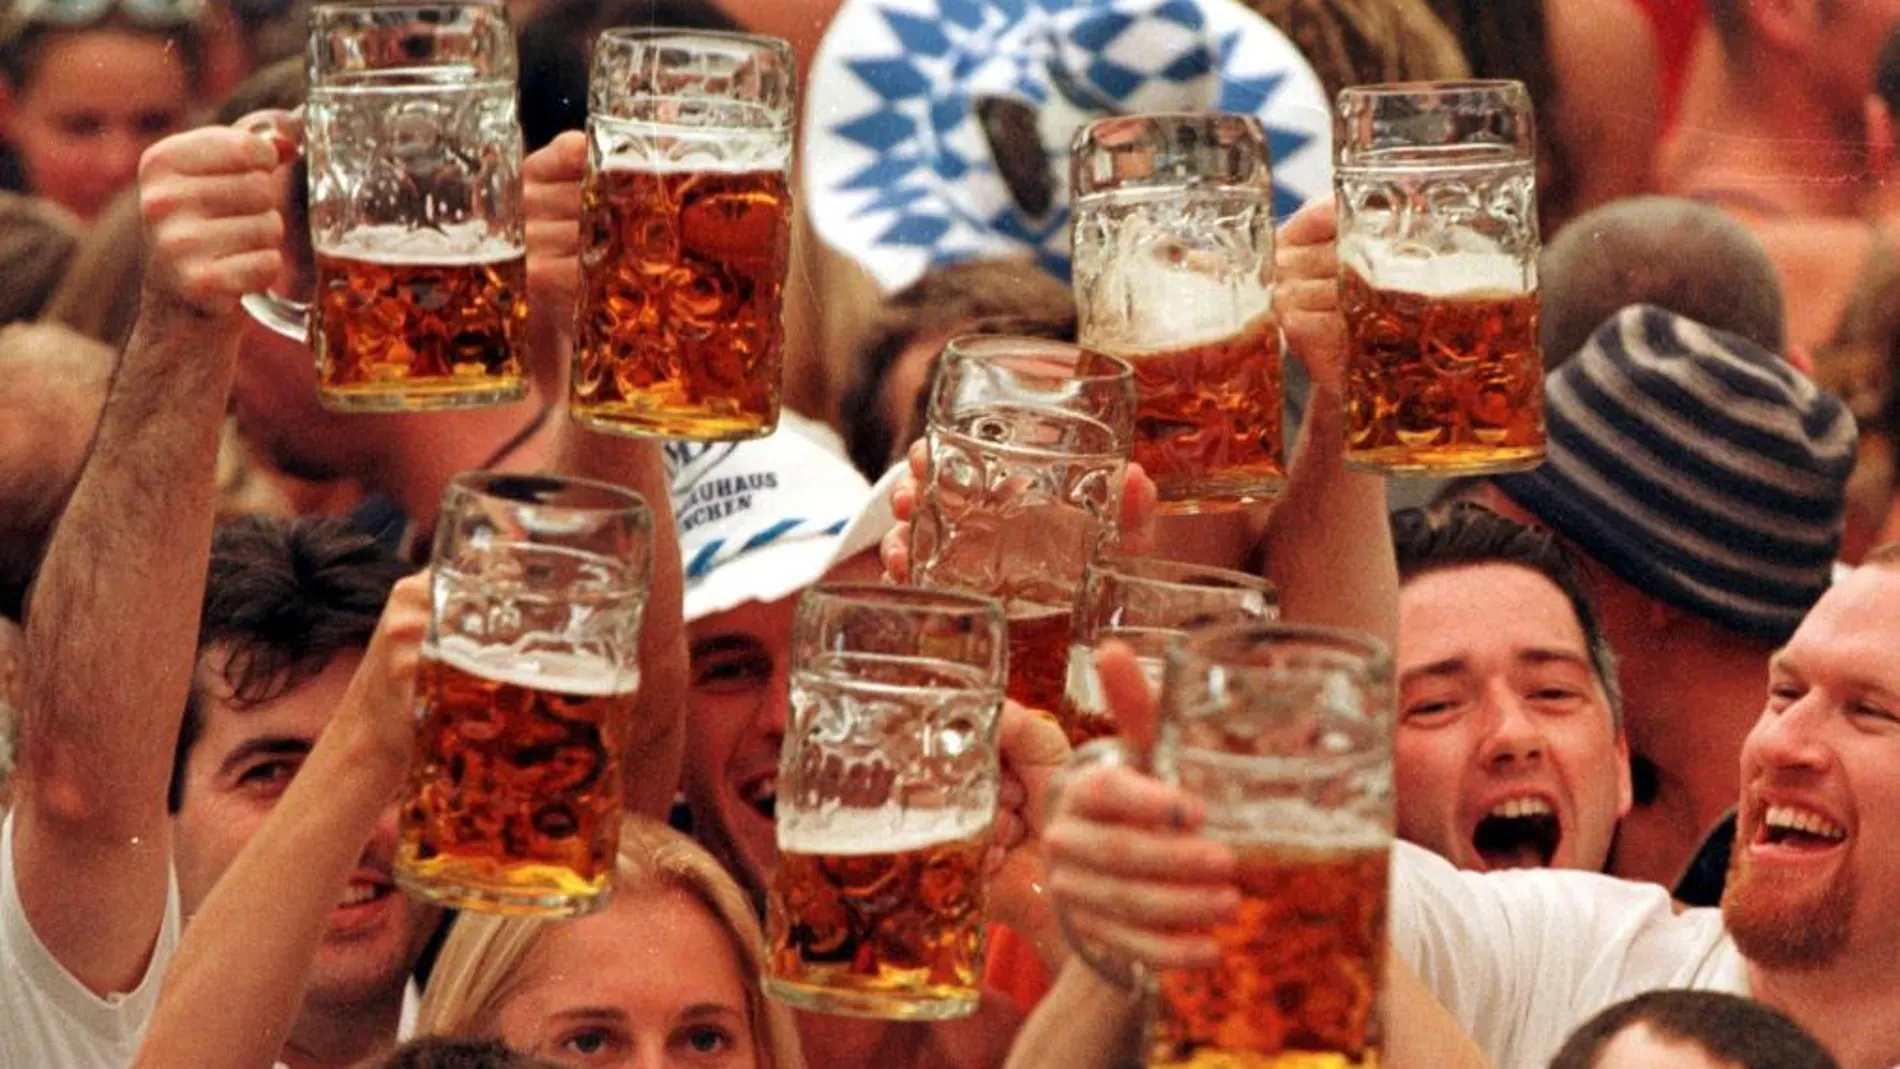 La fiesta de la cerveza congrega a millones de personas